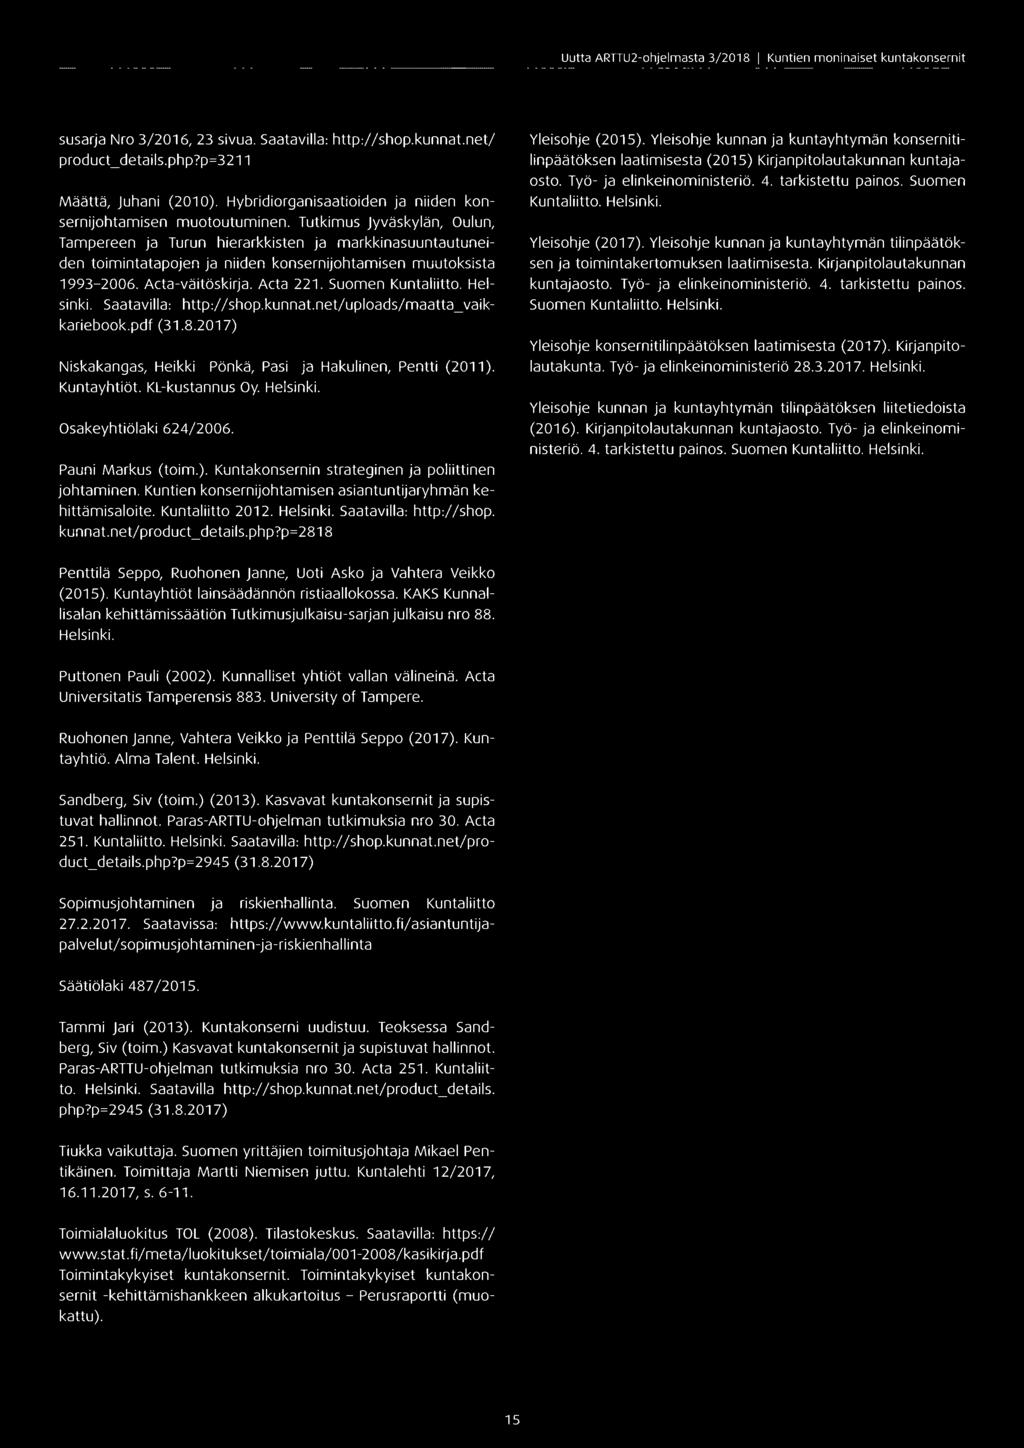 Tutkimus Jyväskylän, Oulun, Tampereen ja Turun hierarkkisten ja markkinasuuntautuneiden toimintatapojen ja niiden konsernijohtamisen muutoksista 1993-2006. Acta-väitöskirja. Acta 221.